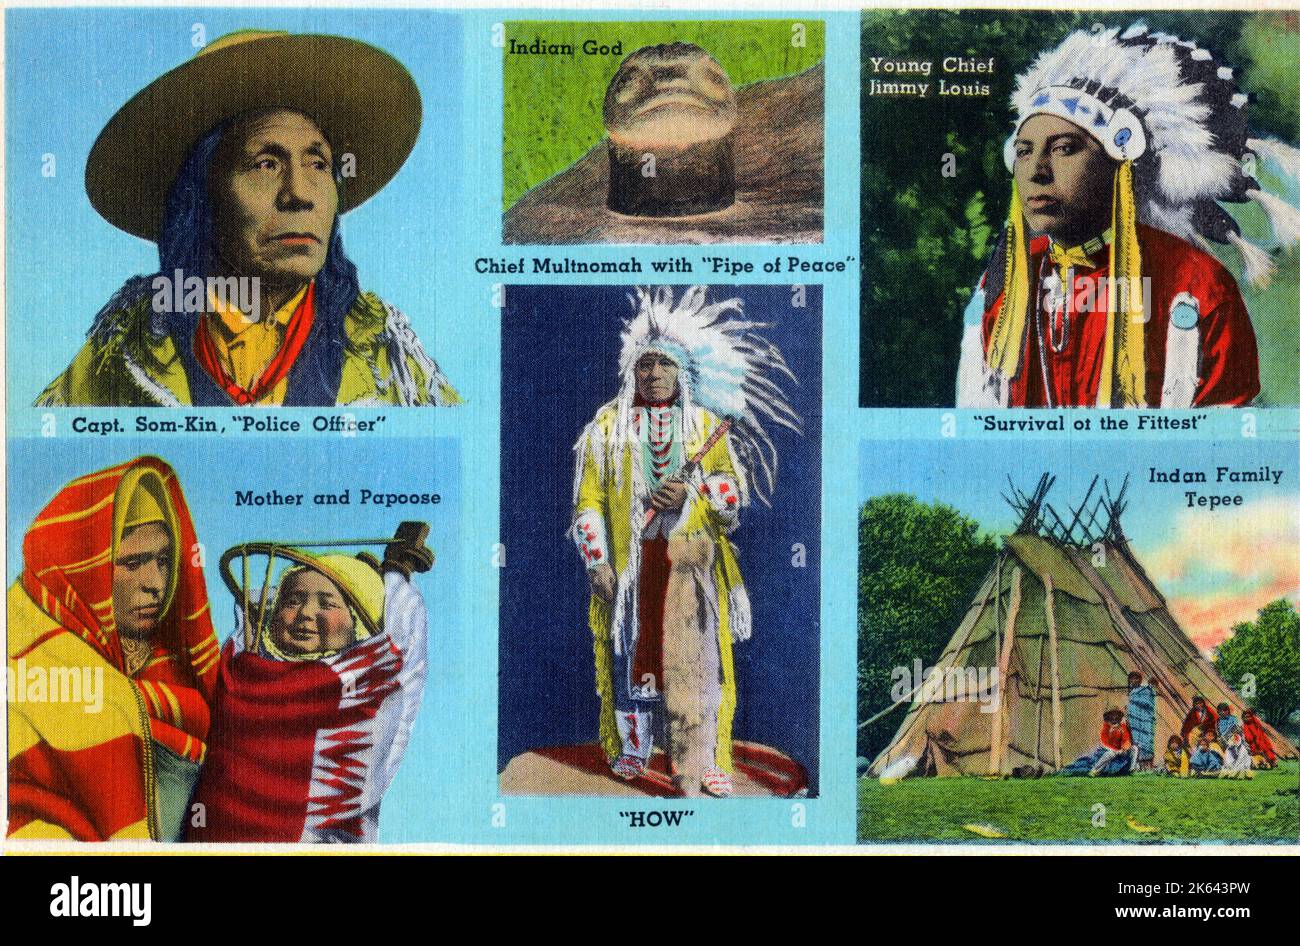 Portland, Oregon, EE.UU. - (En el sentido de las agujas del reloj desde arriba a la izquierda): Capitán Som-Kin, 'oficial de policía'; un 'dios indio'; el joven jefe Jimmy Louis; una madre india y Papoose; el jefe Multnomah con 'Pipa de Paz'; el tepee de una familia india. Foto de stock